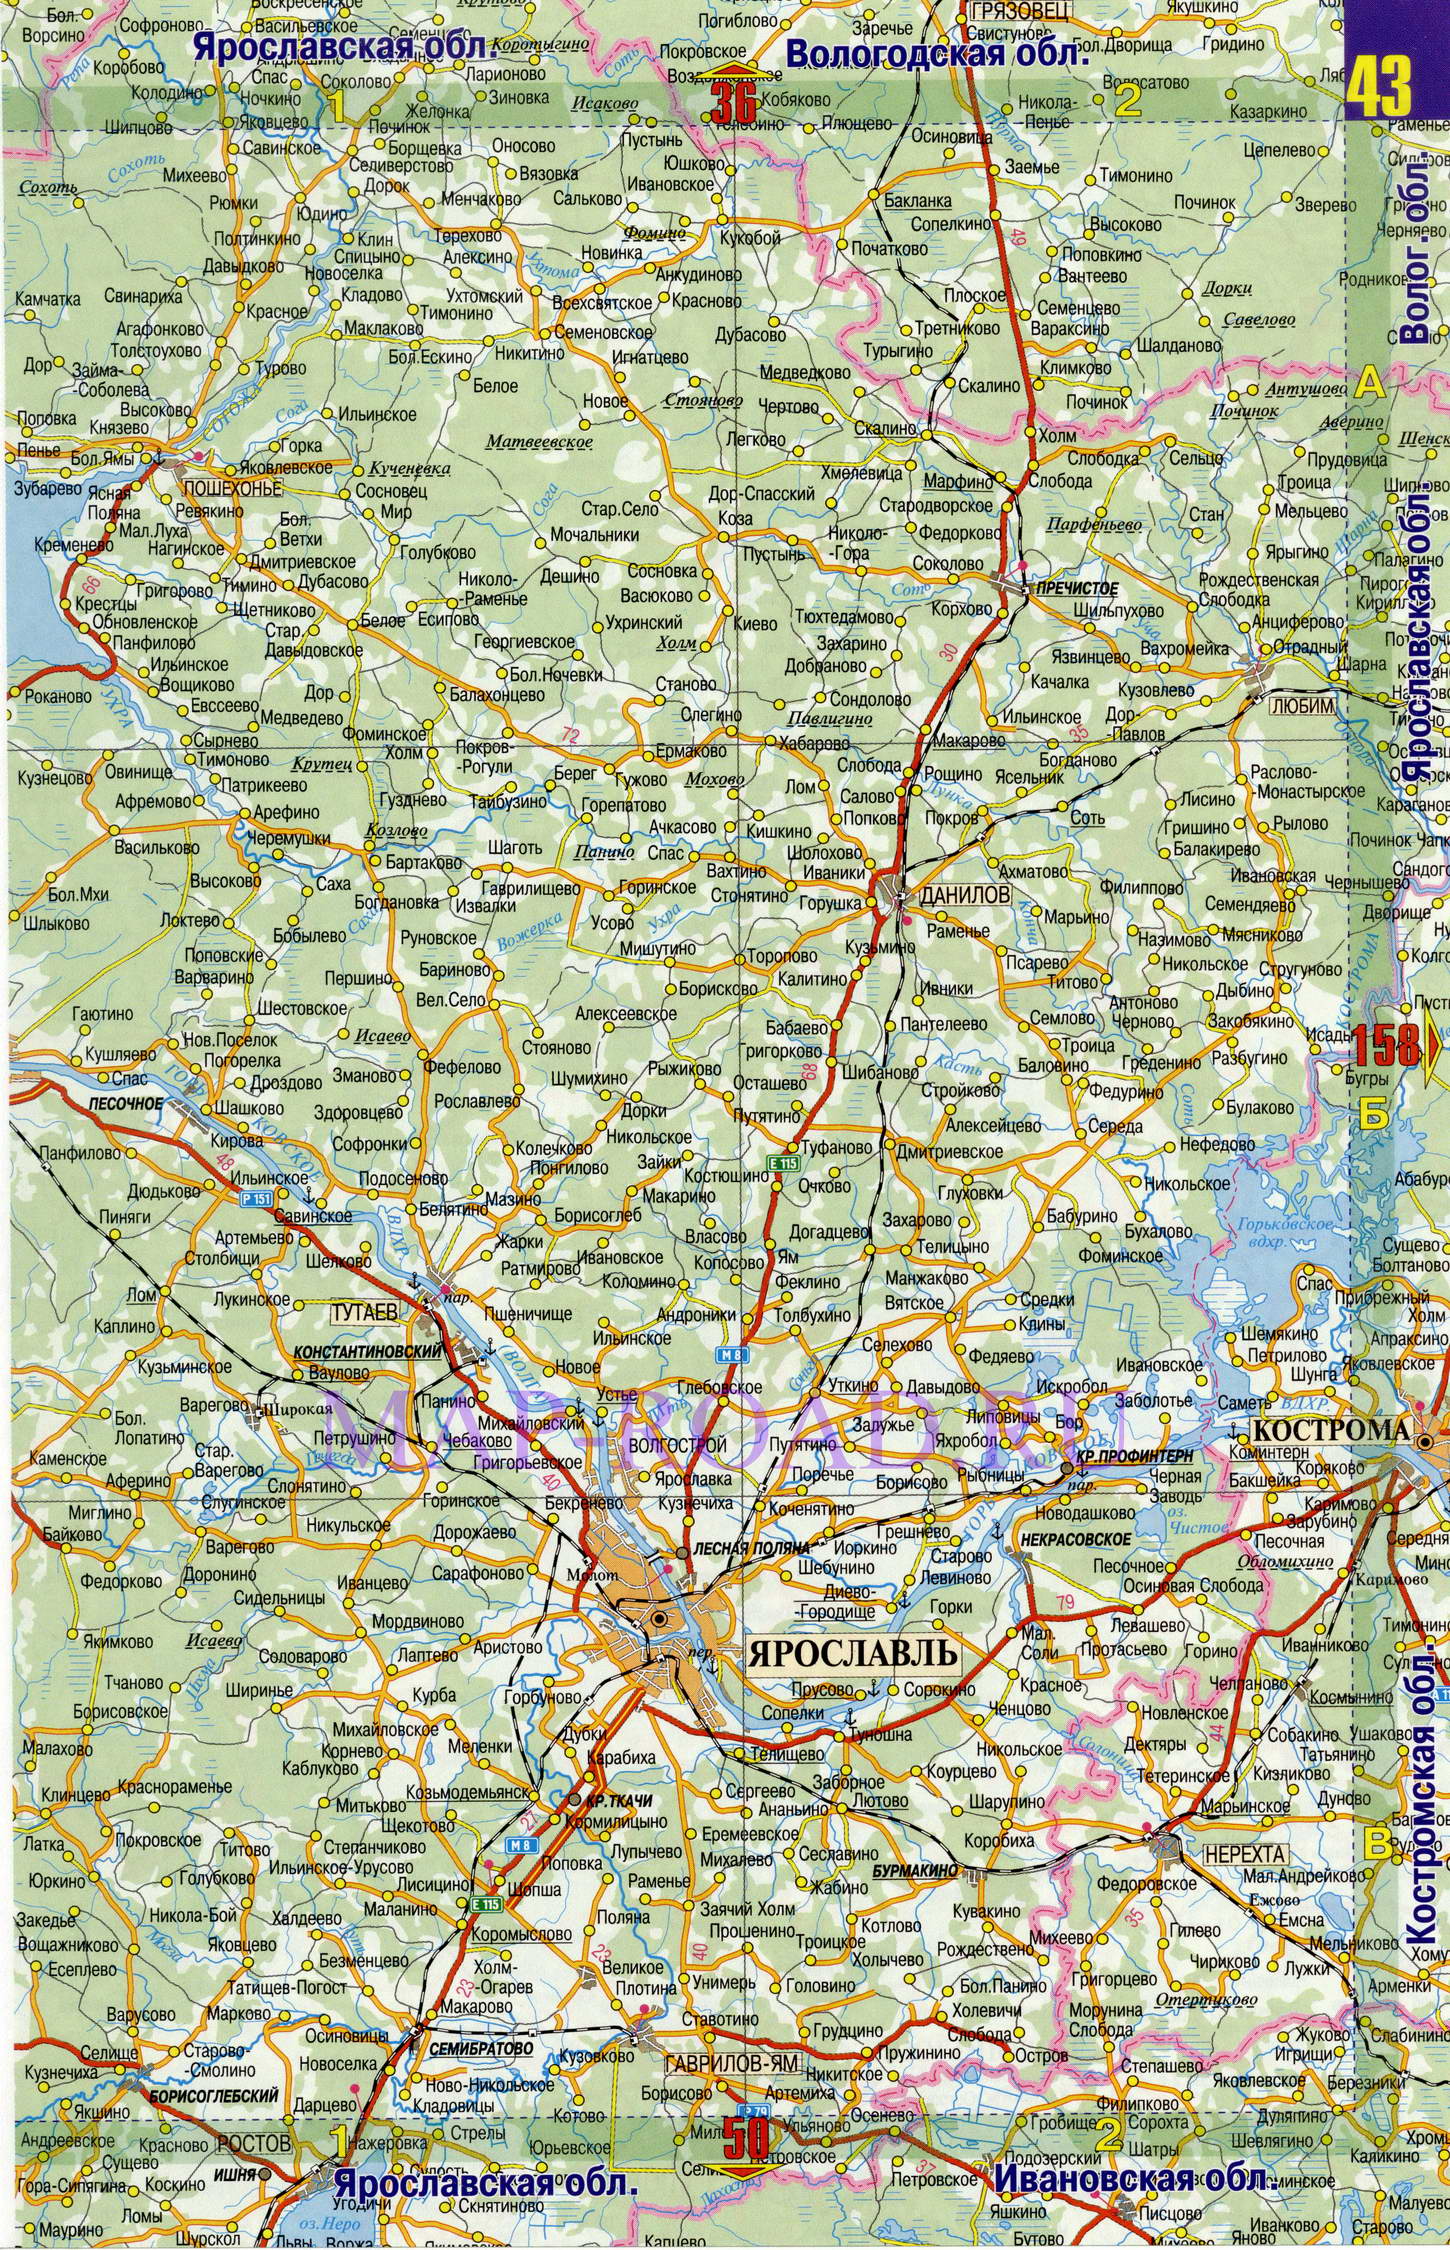 Подробная карта Ярославской области. Карта масштаба 1см:7км - Ярославская область, B0 - 